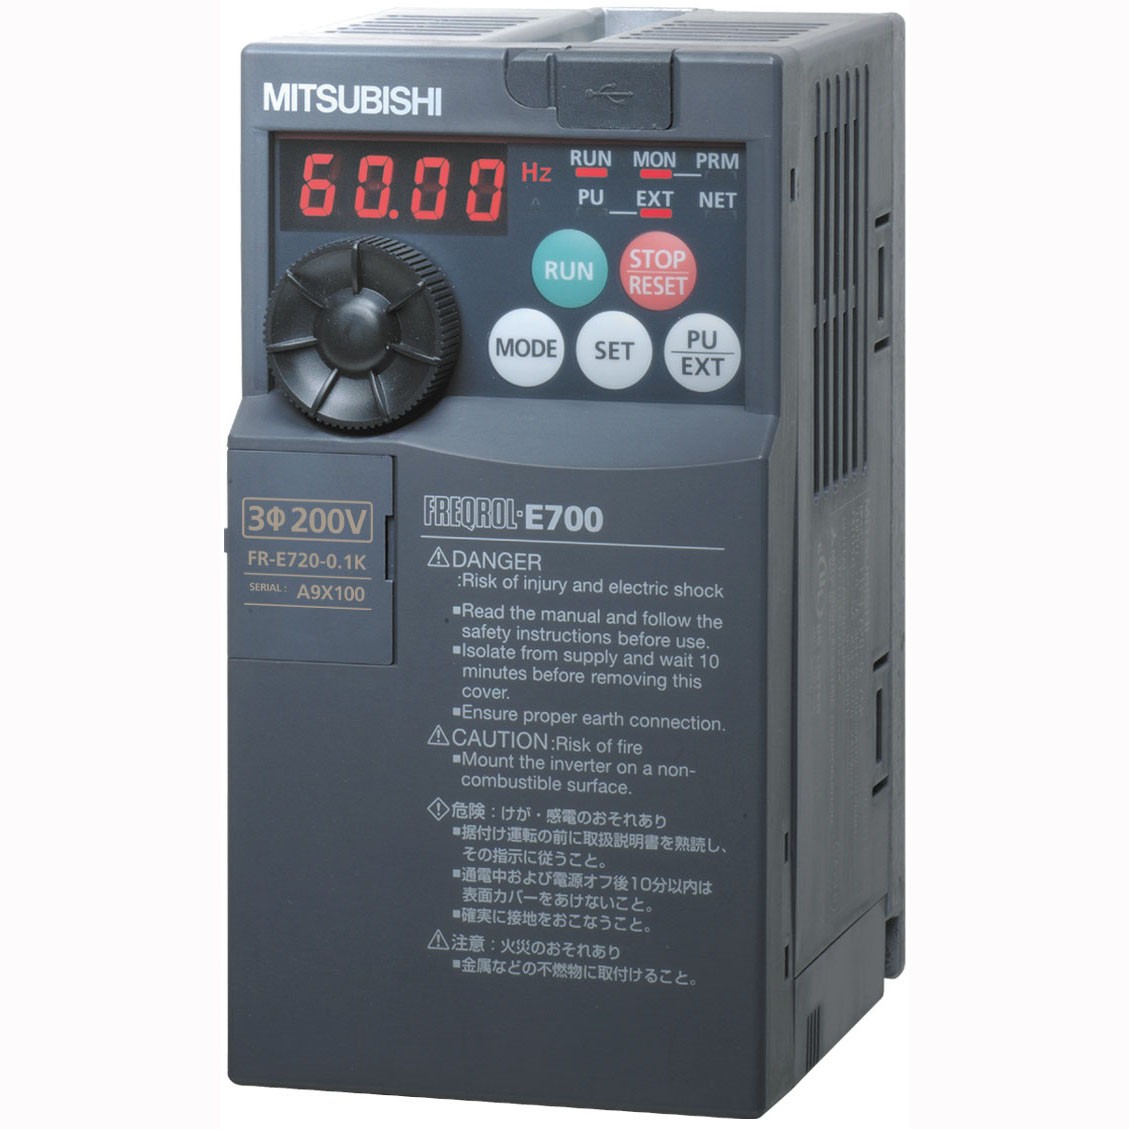  FR-E740-0.4K-CHT 三菱变频器FR-E740-0.4K-CHT价格好 E700系列3相400V电源 0.